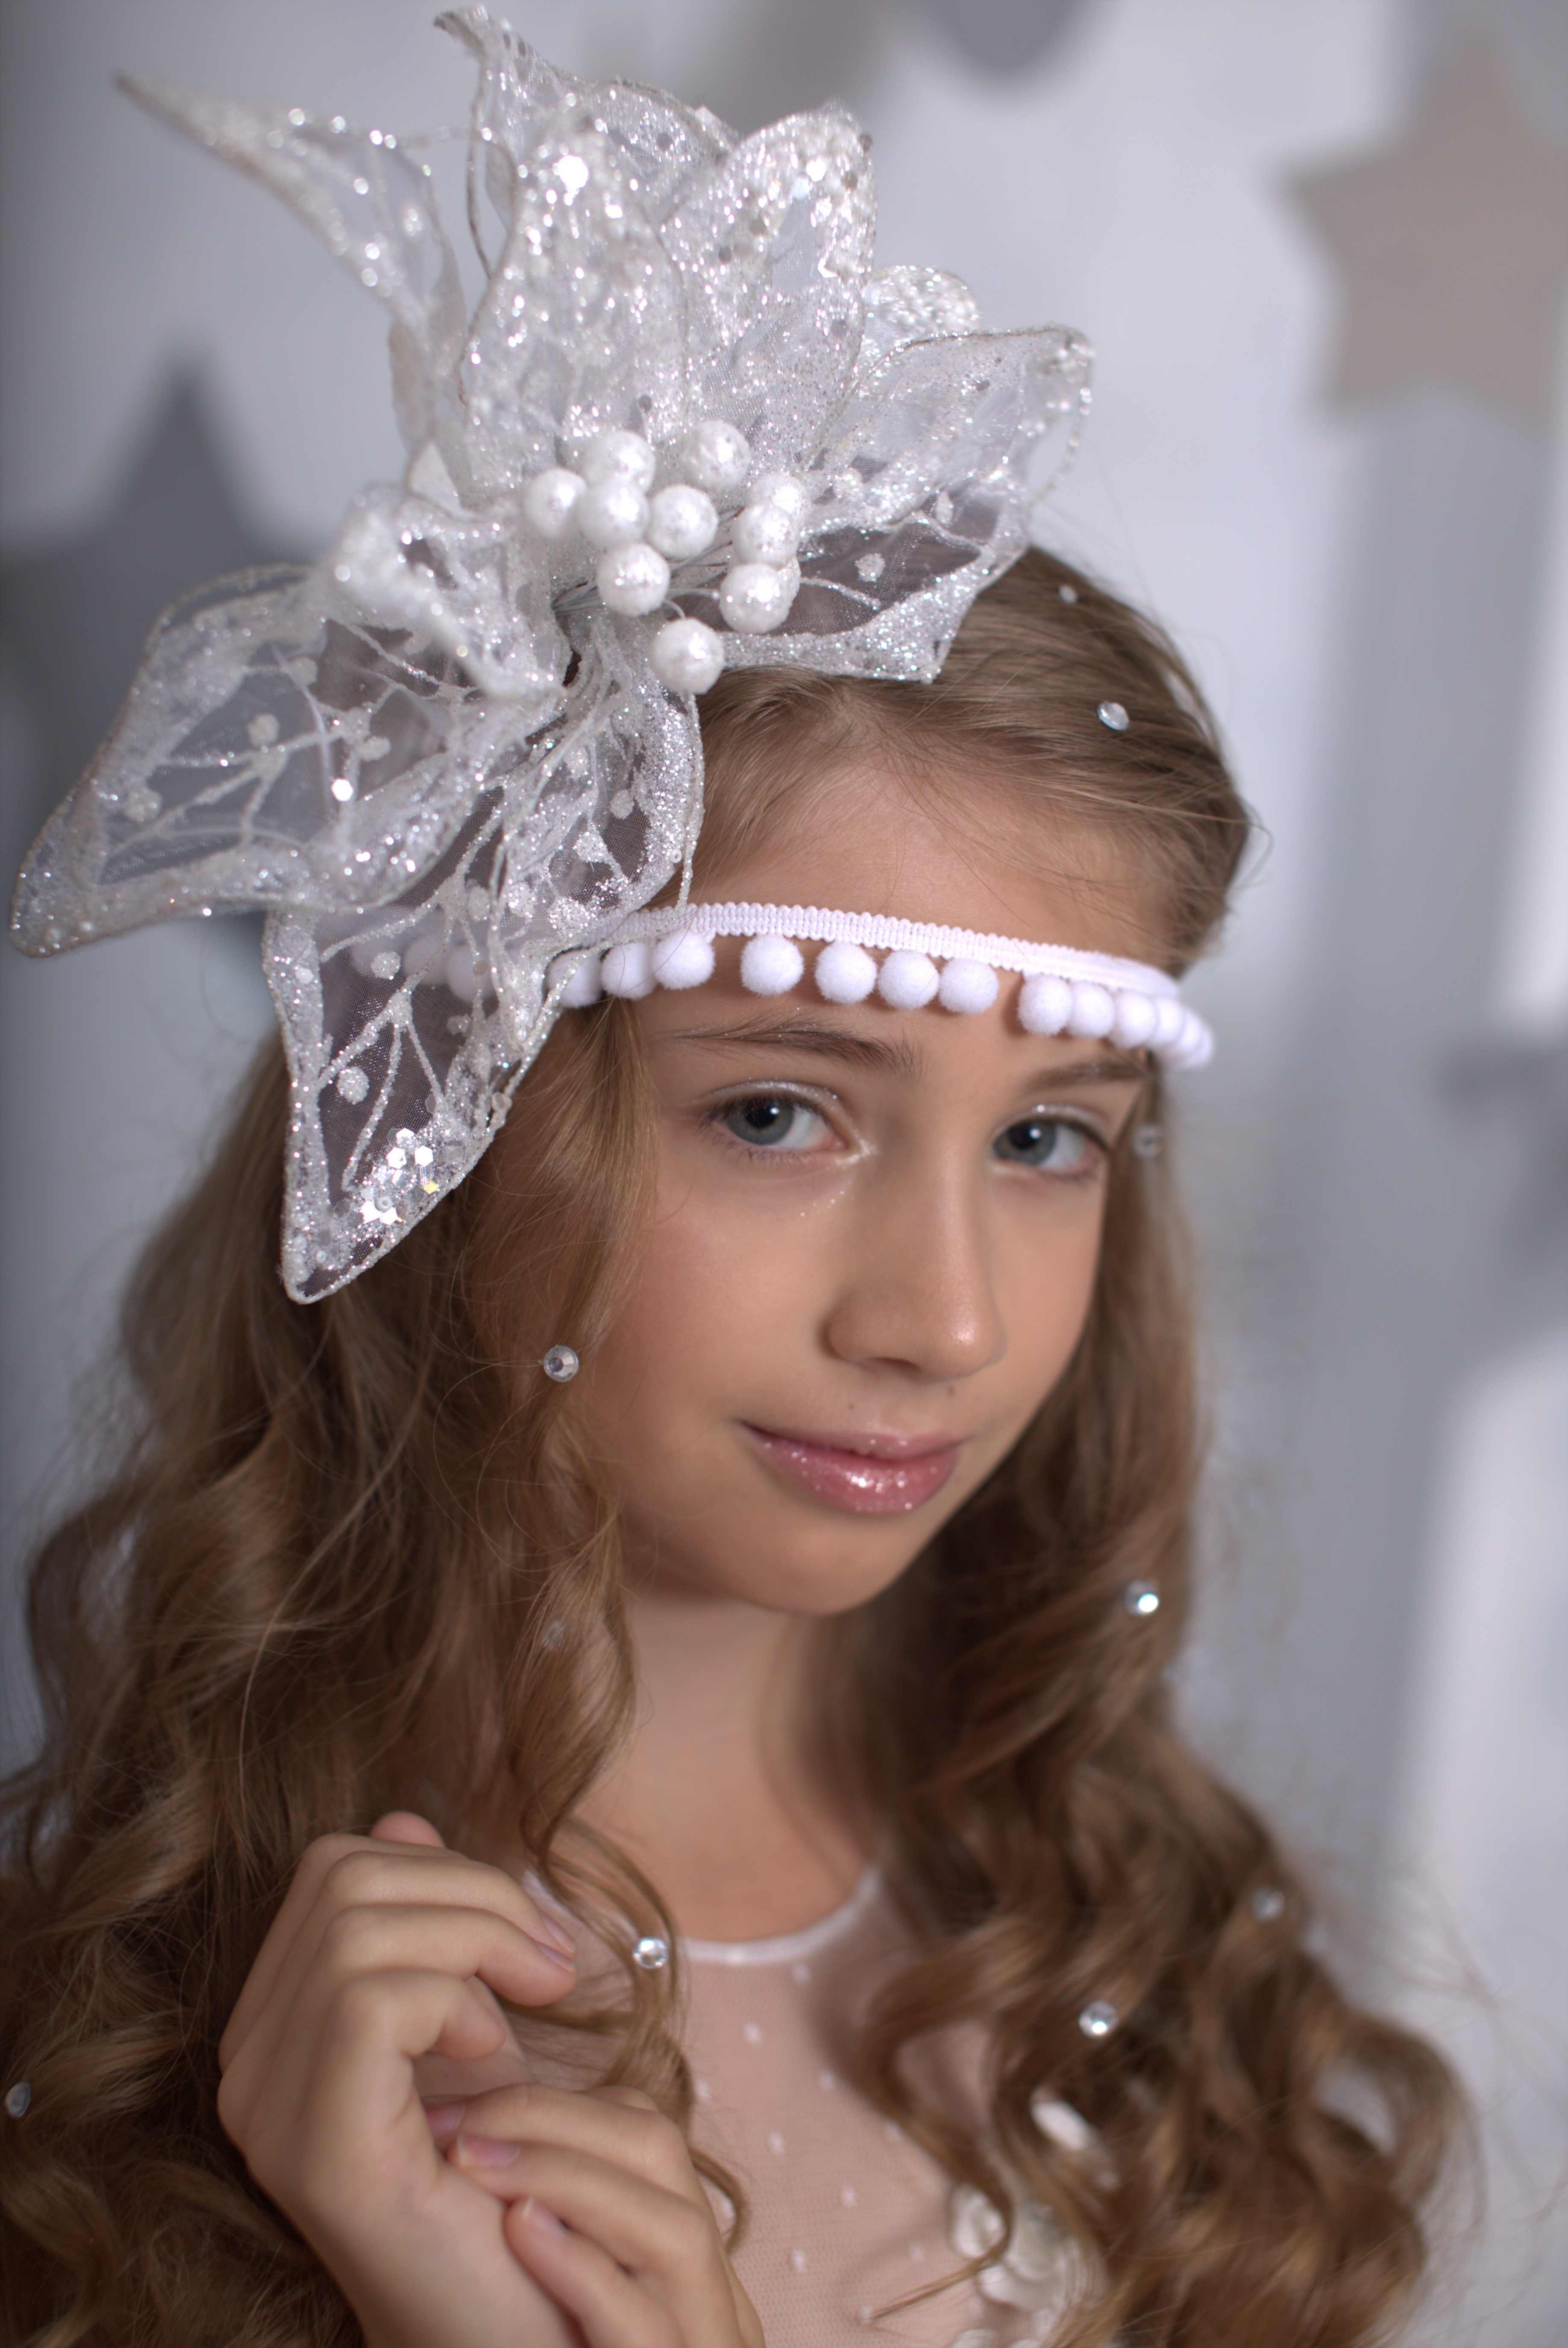 София Самородских - аккредитованная модель для участия в подиумных показах на Междунродной Детской Неделе моды